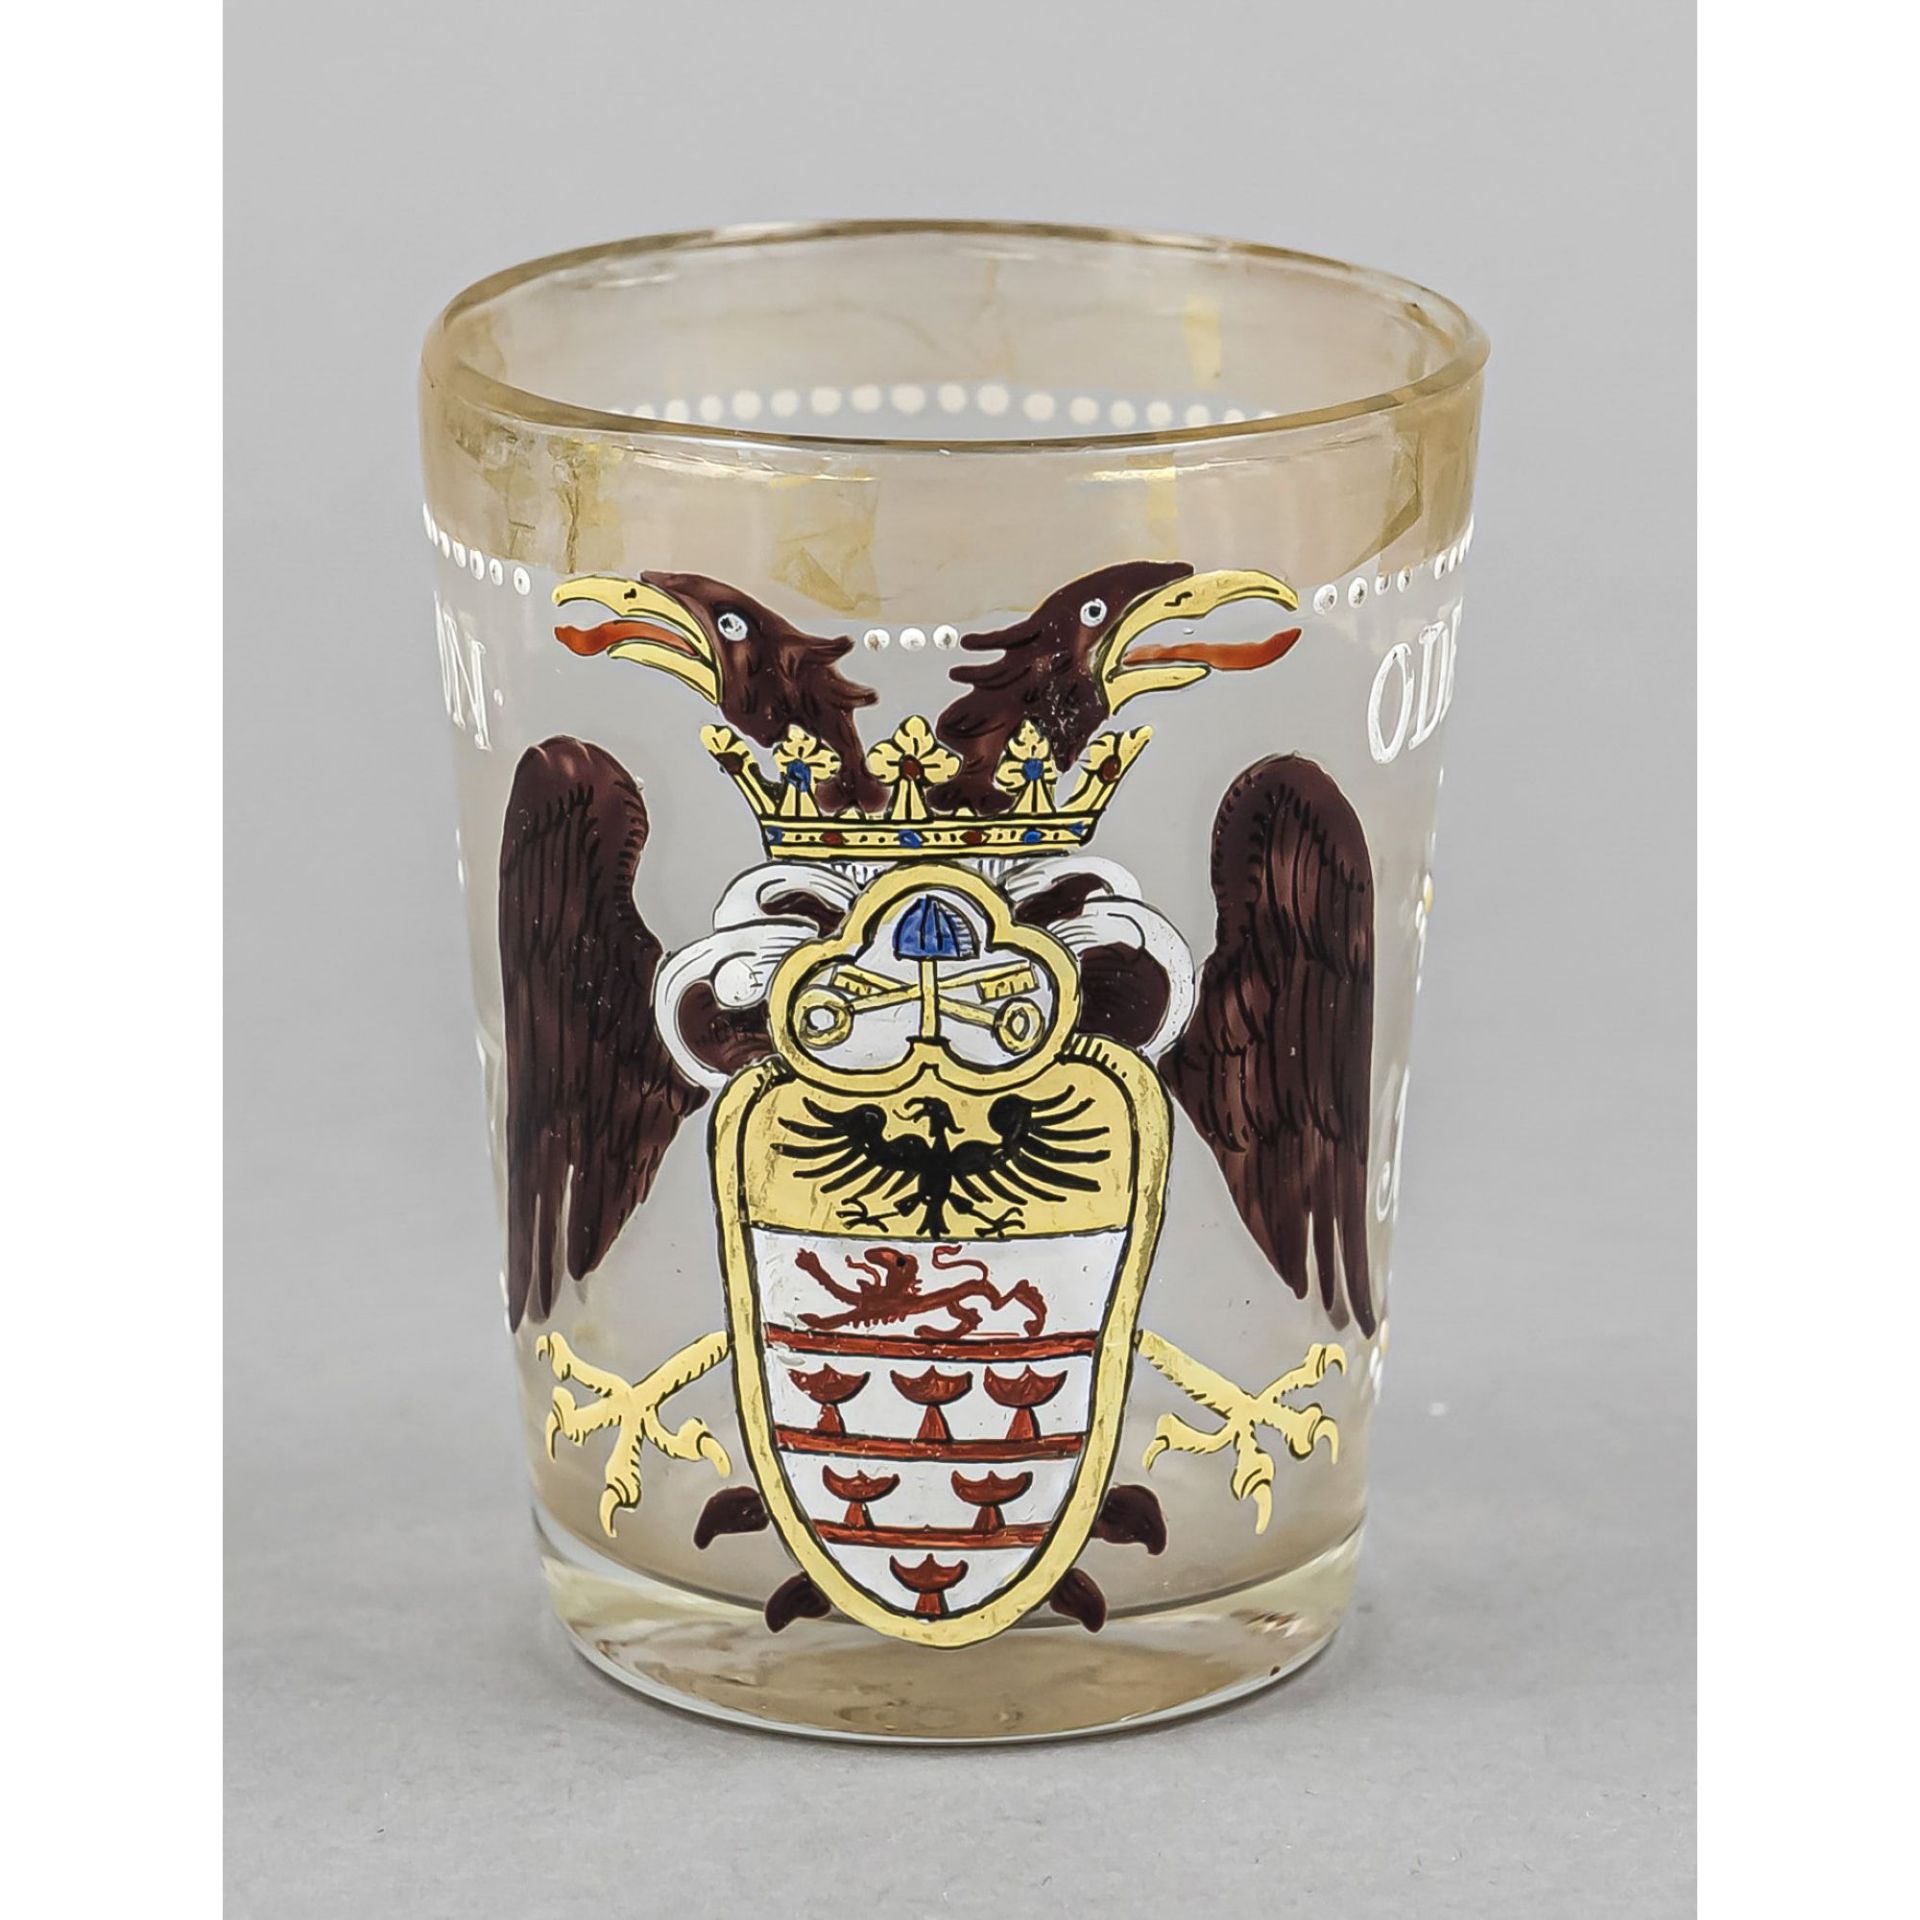 Becherglas, Wohl 18.Jhdt. runder Stand, konischer Korpus, klares Glas mit reicher polychromer